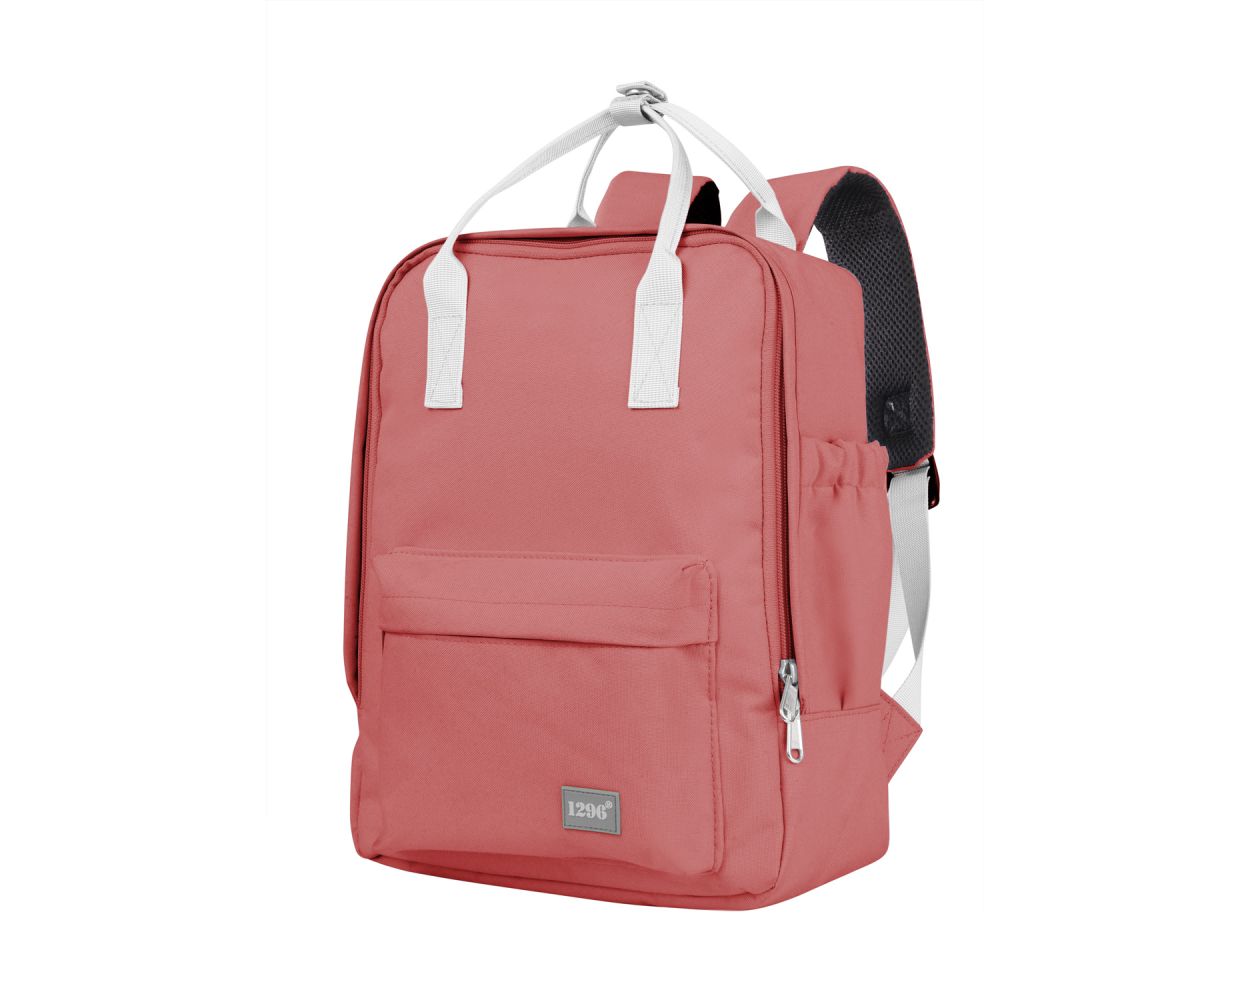 blnbag U1 Rucksack Backpack Tasche Daypack Bag 